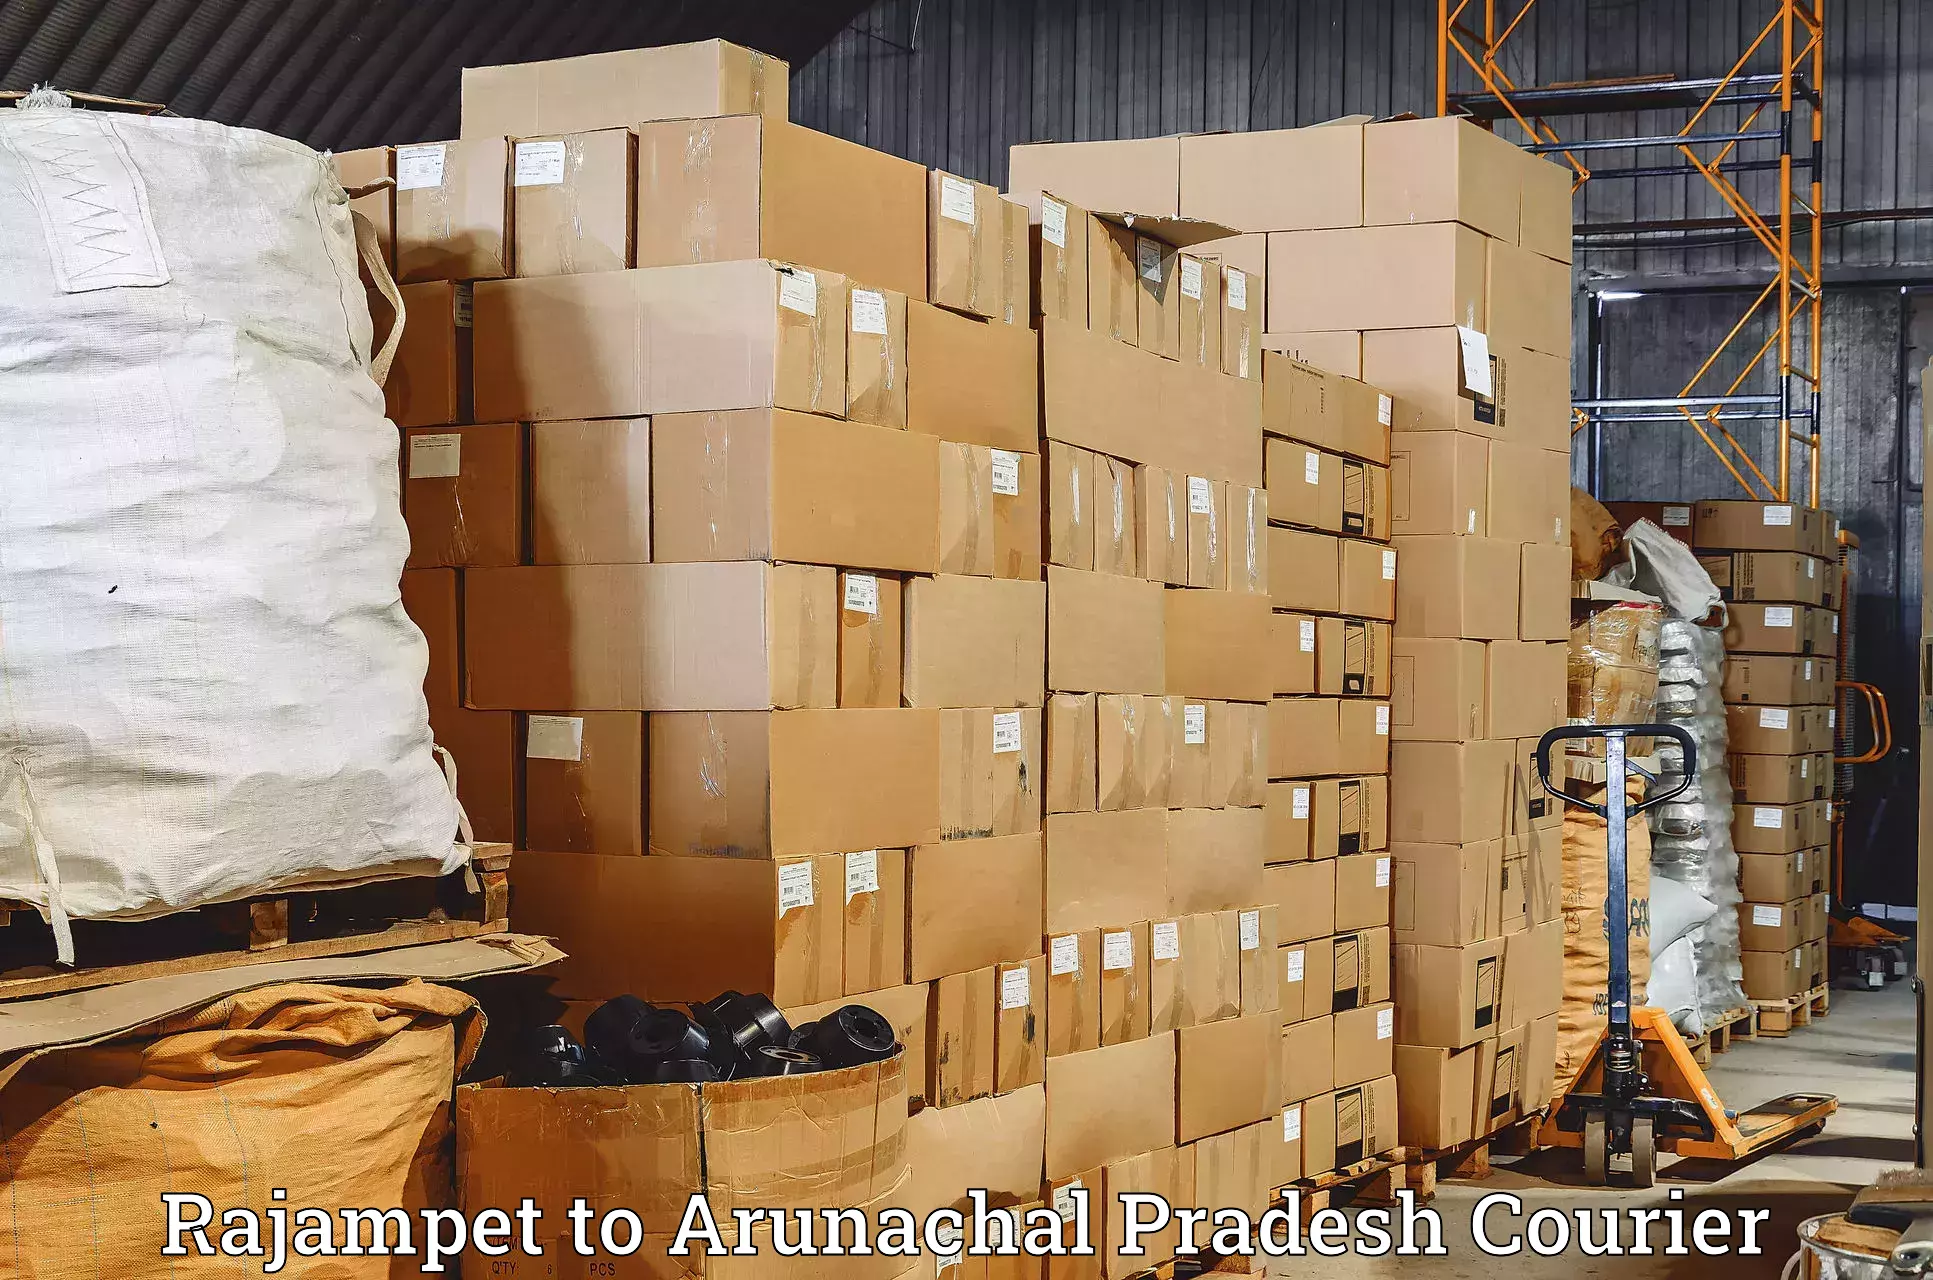 Customer-oriented courier services Rajampet to Arunachal Pradesh